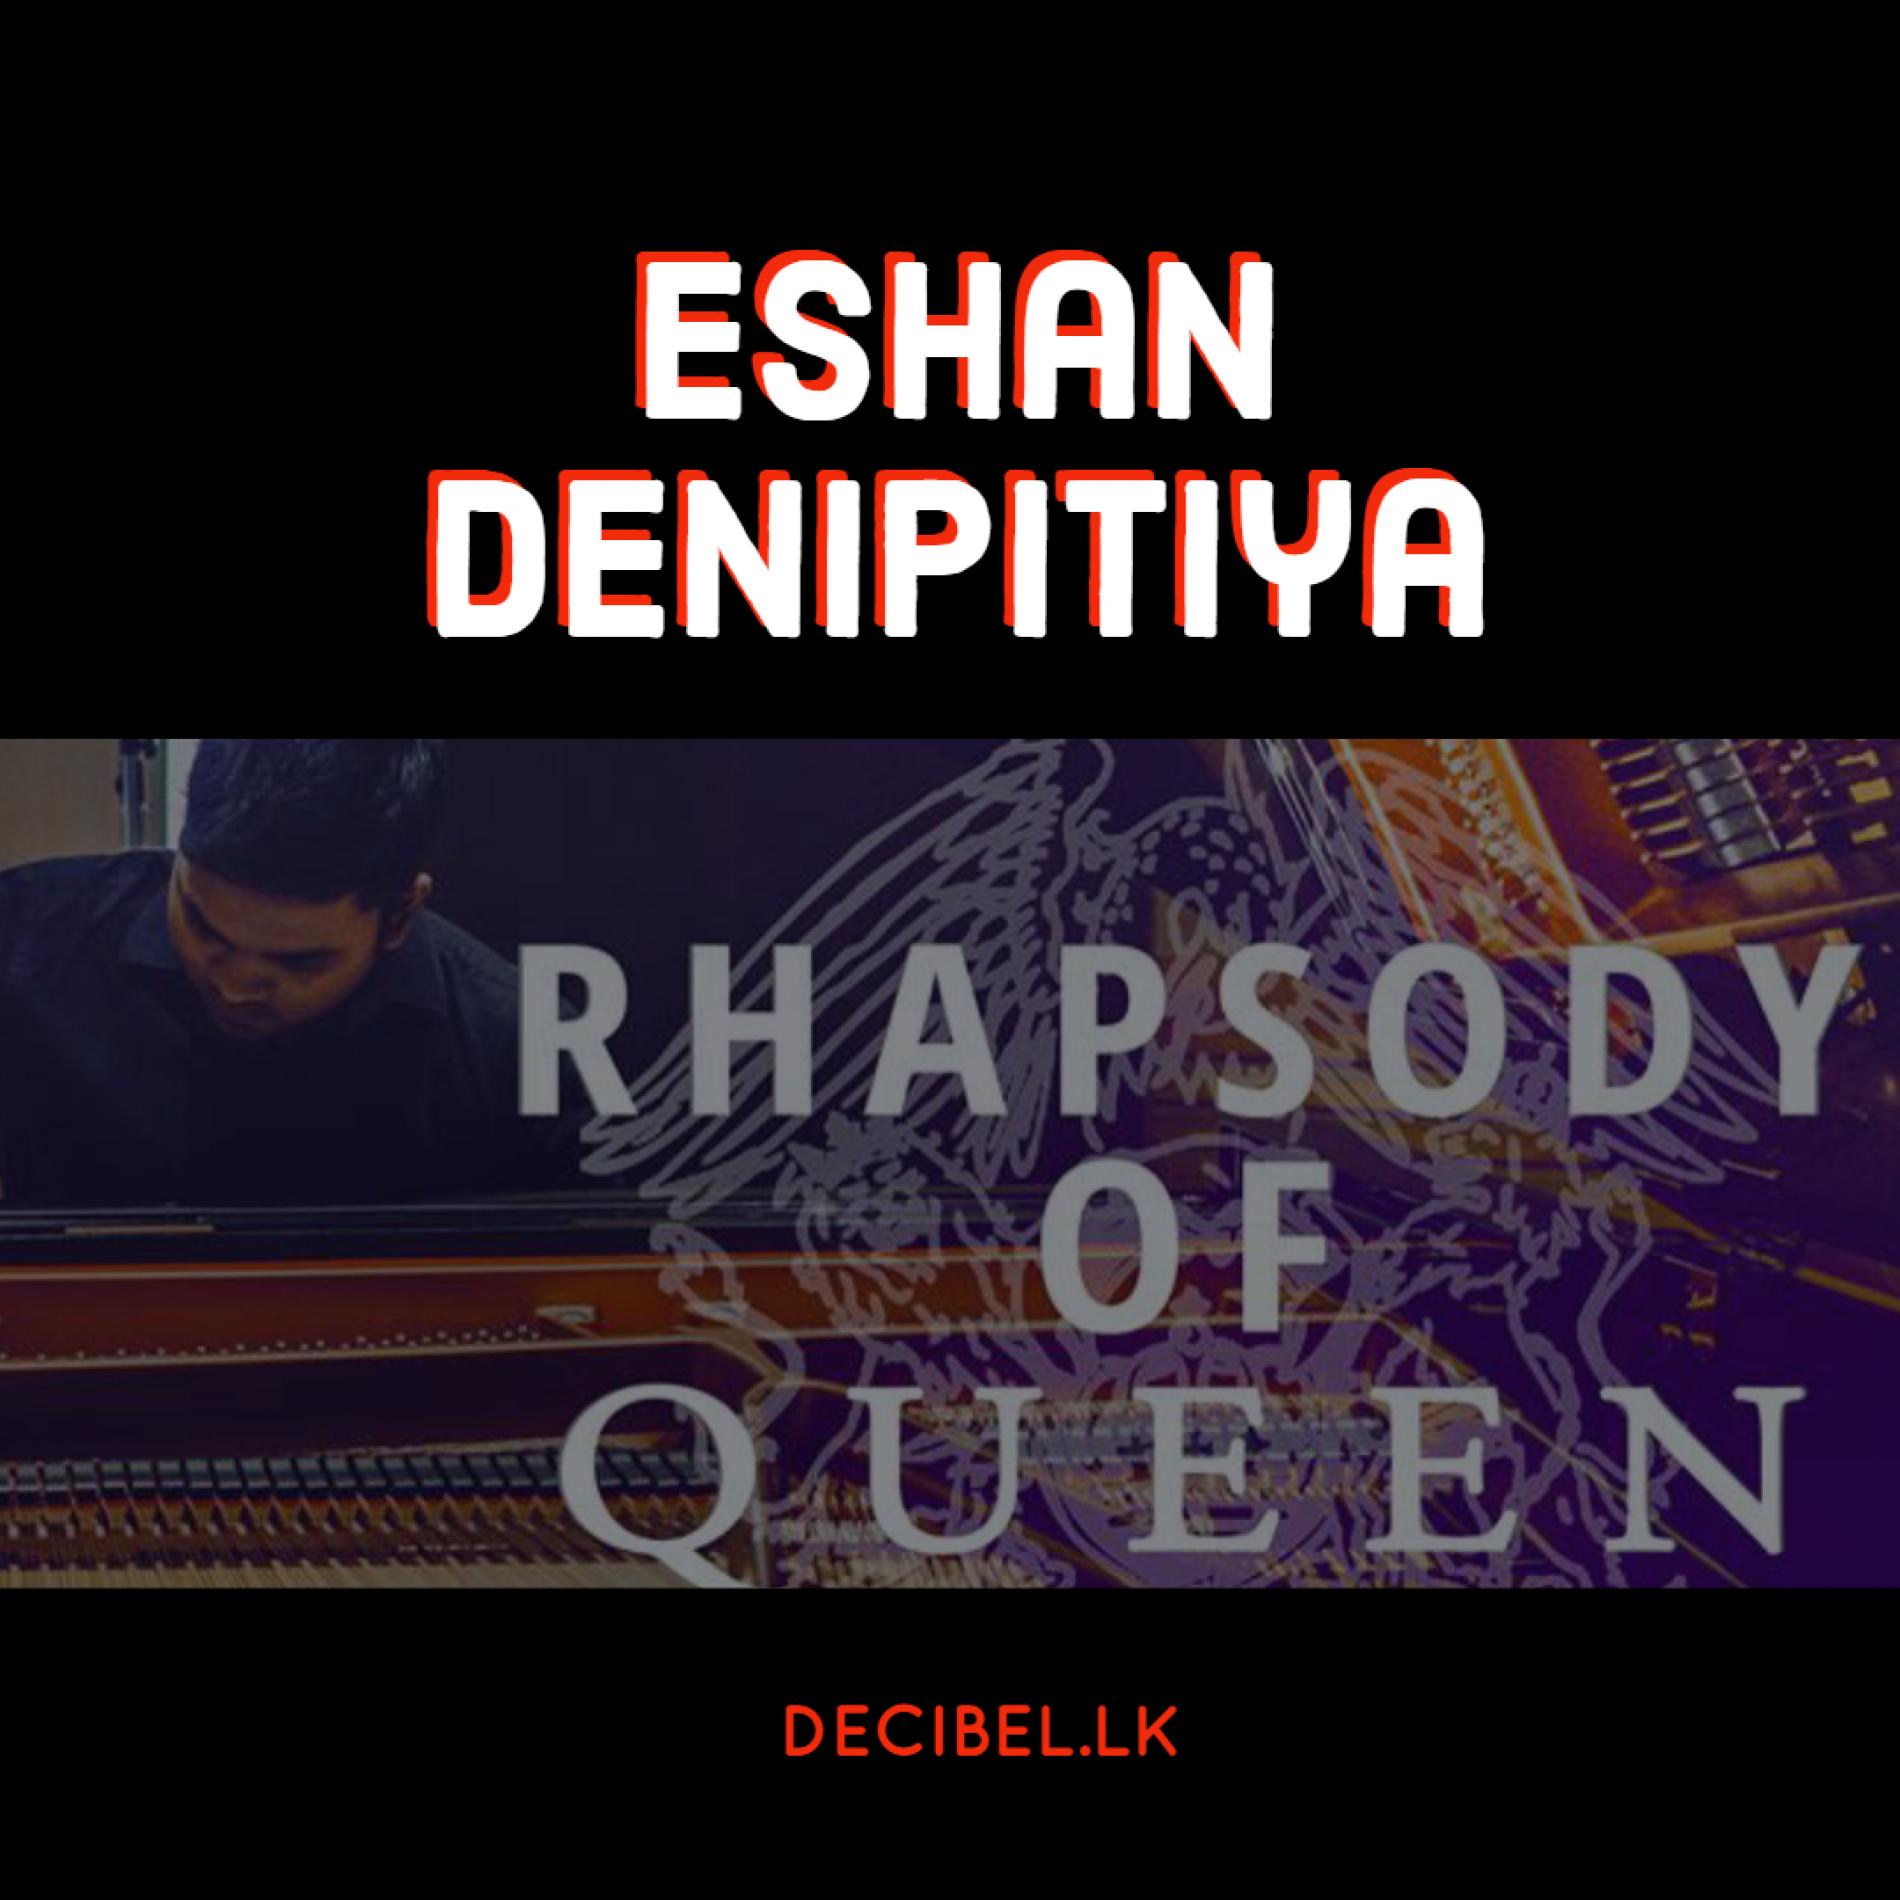 Eshan Denipitiya – “Rhapsody of Queen” (Virtuosic Piano Cover)